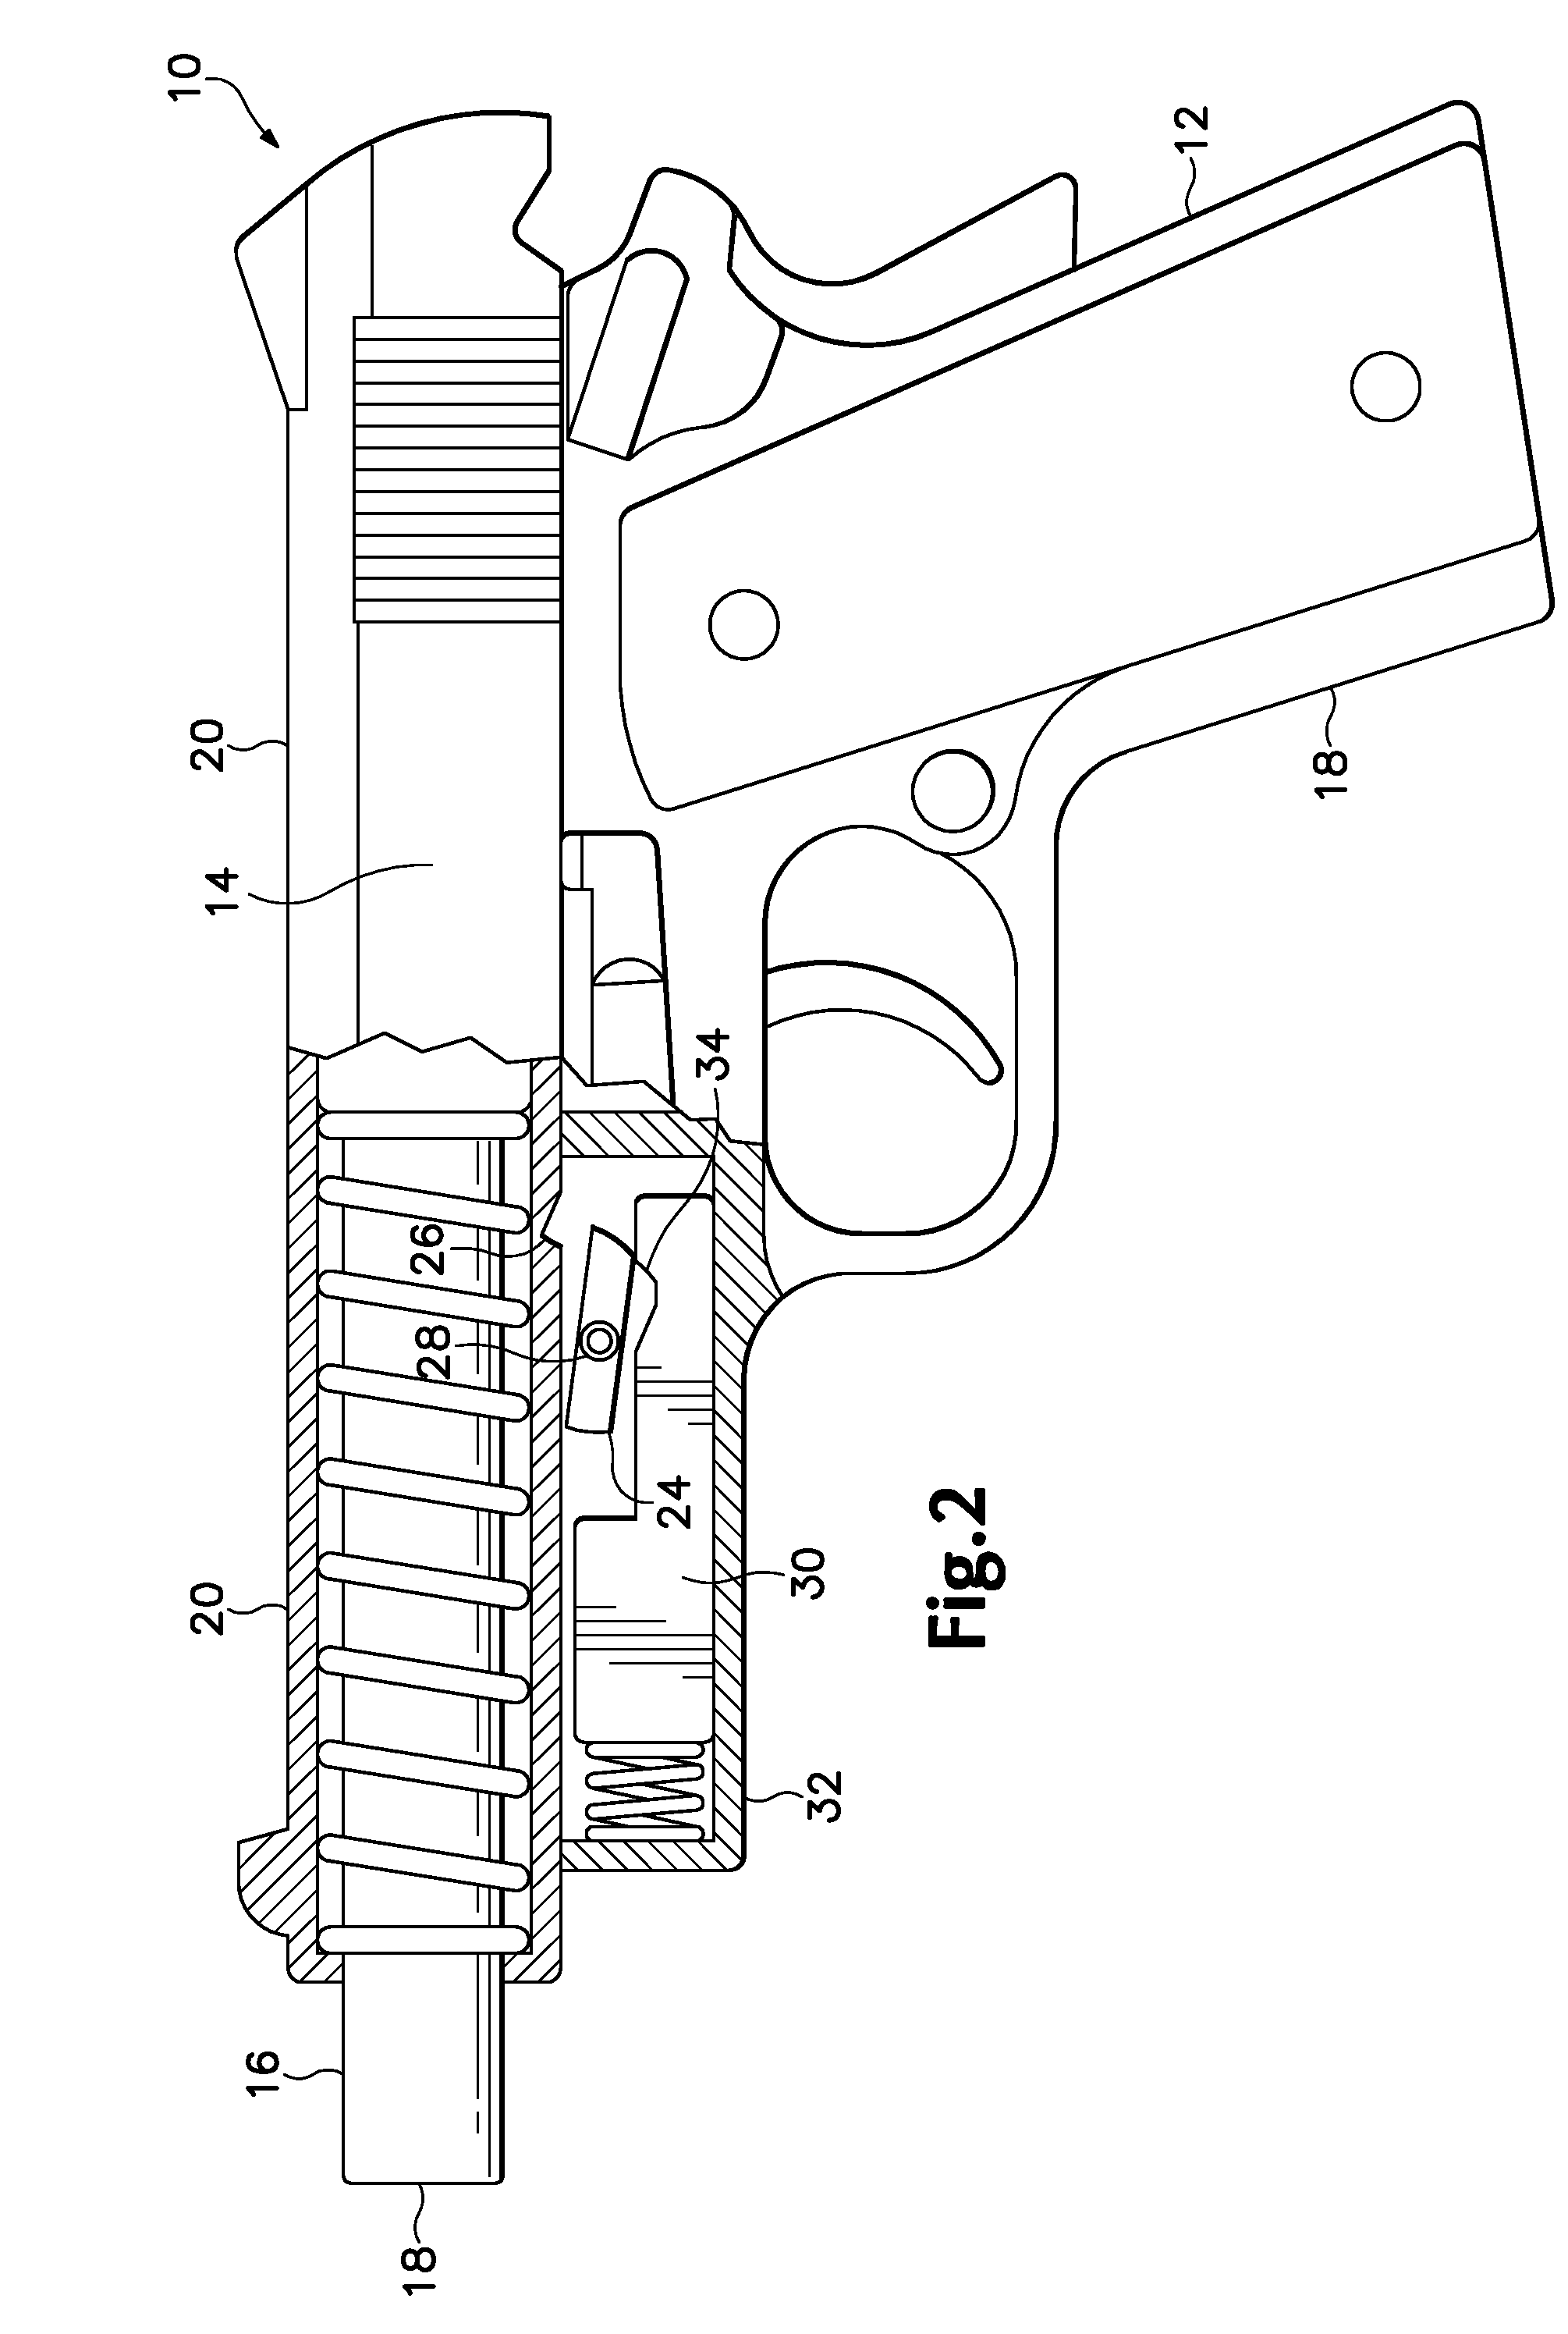 Self-loading Firearm